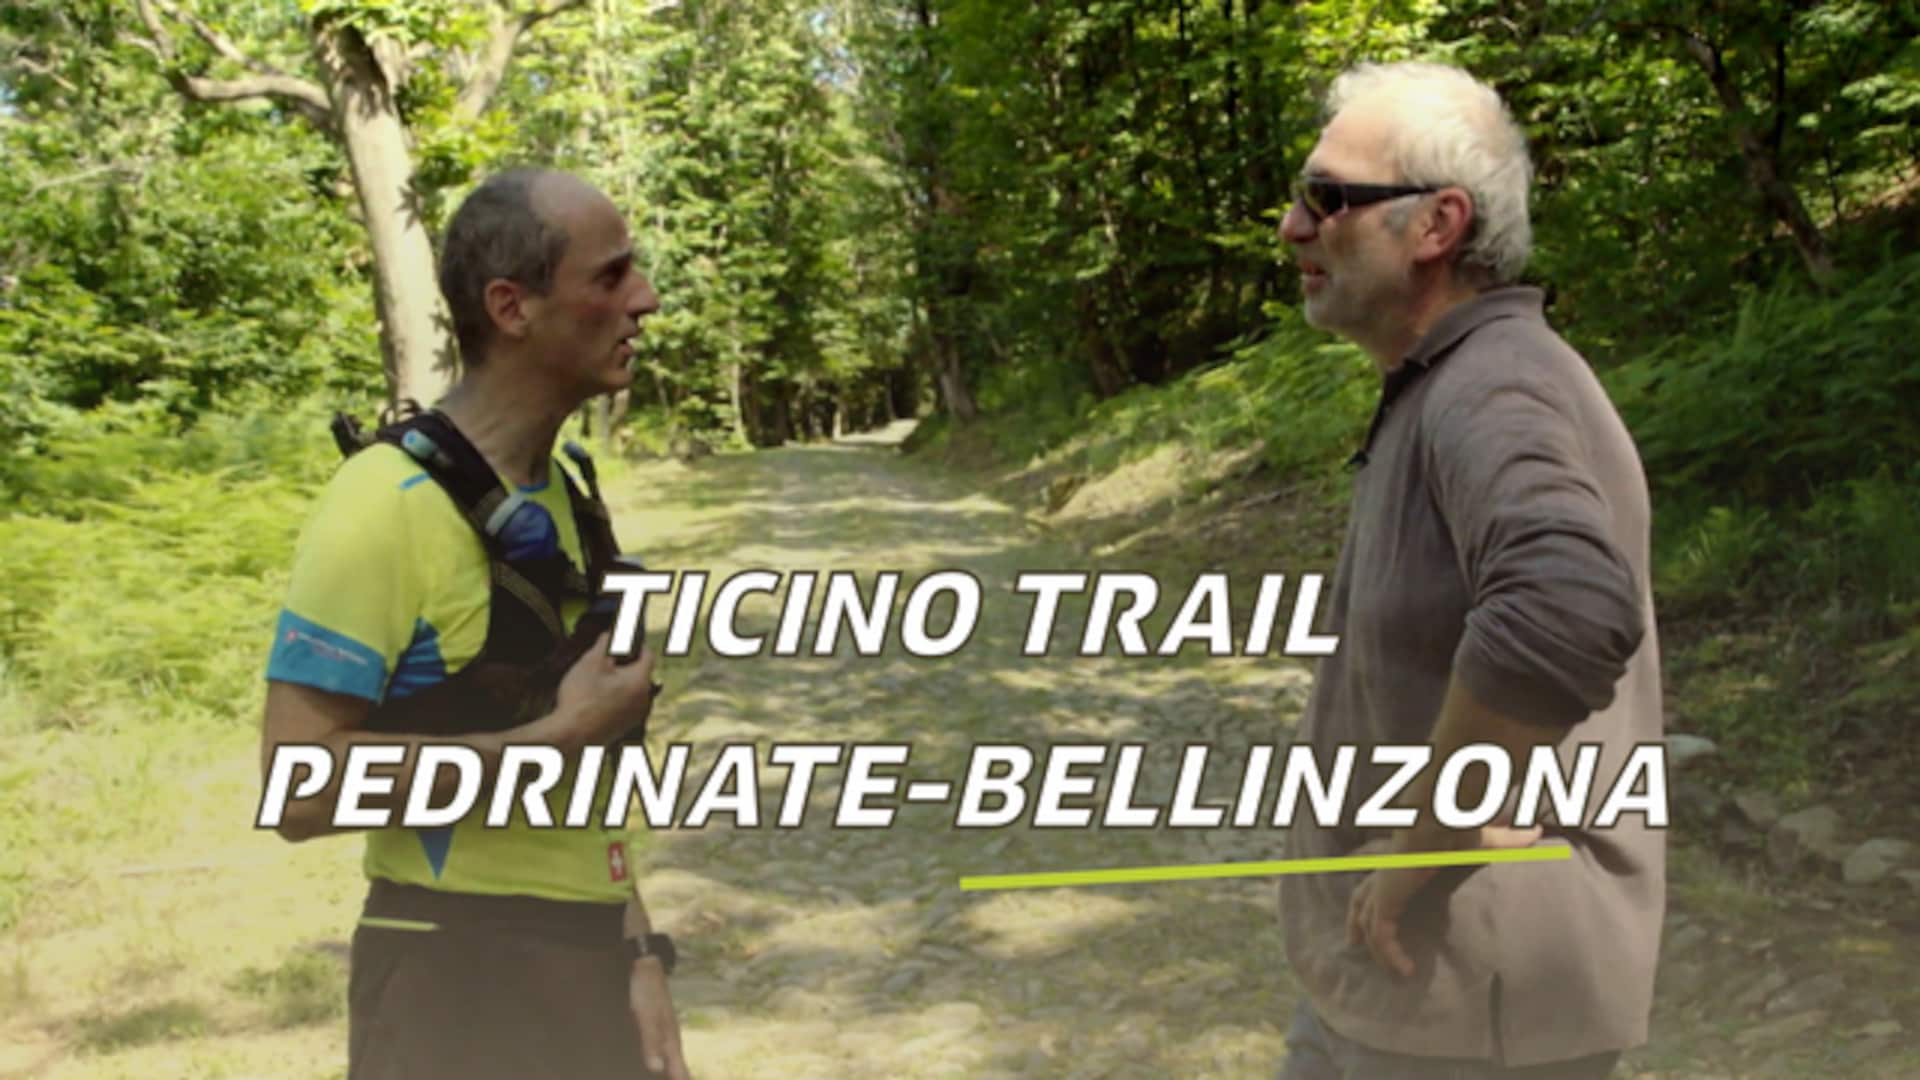 Ticino Trail: Pedrinate - Bellinzona